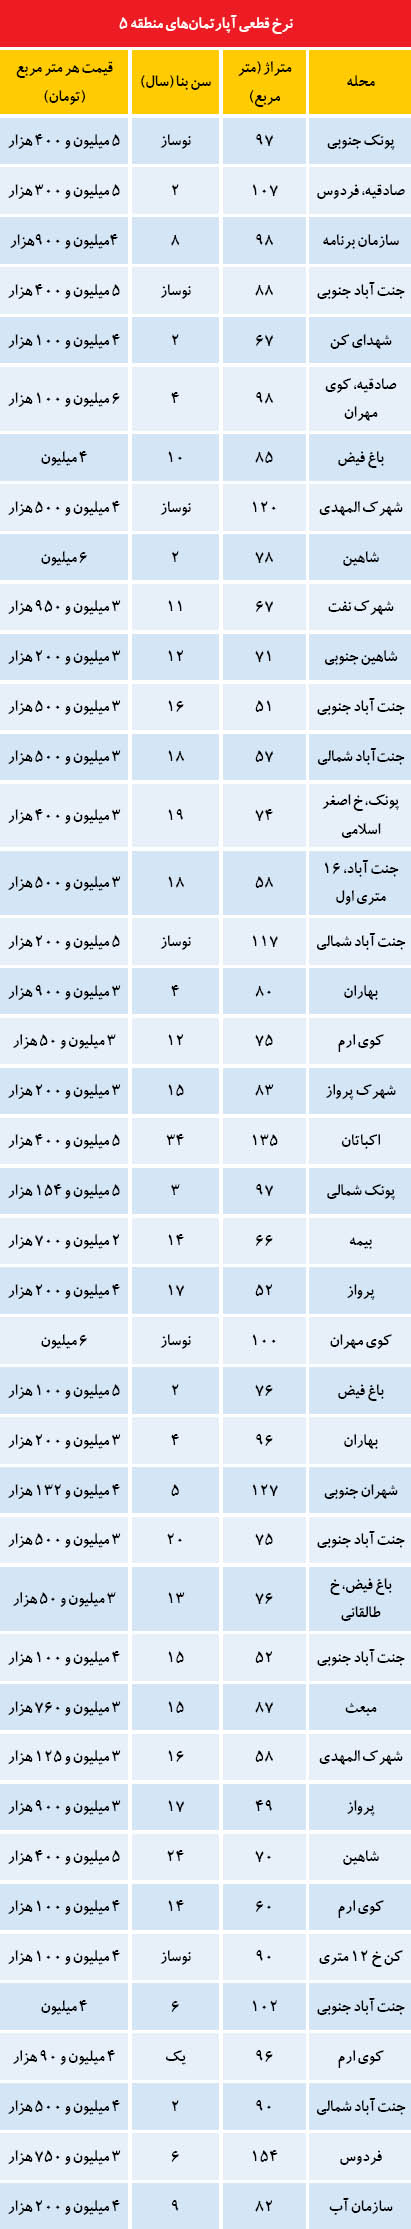 قیمت آپارتمان در منطقه 5 تهران (جدول)